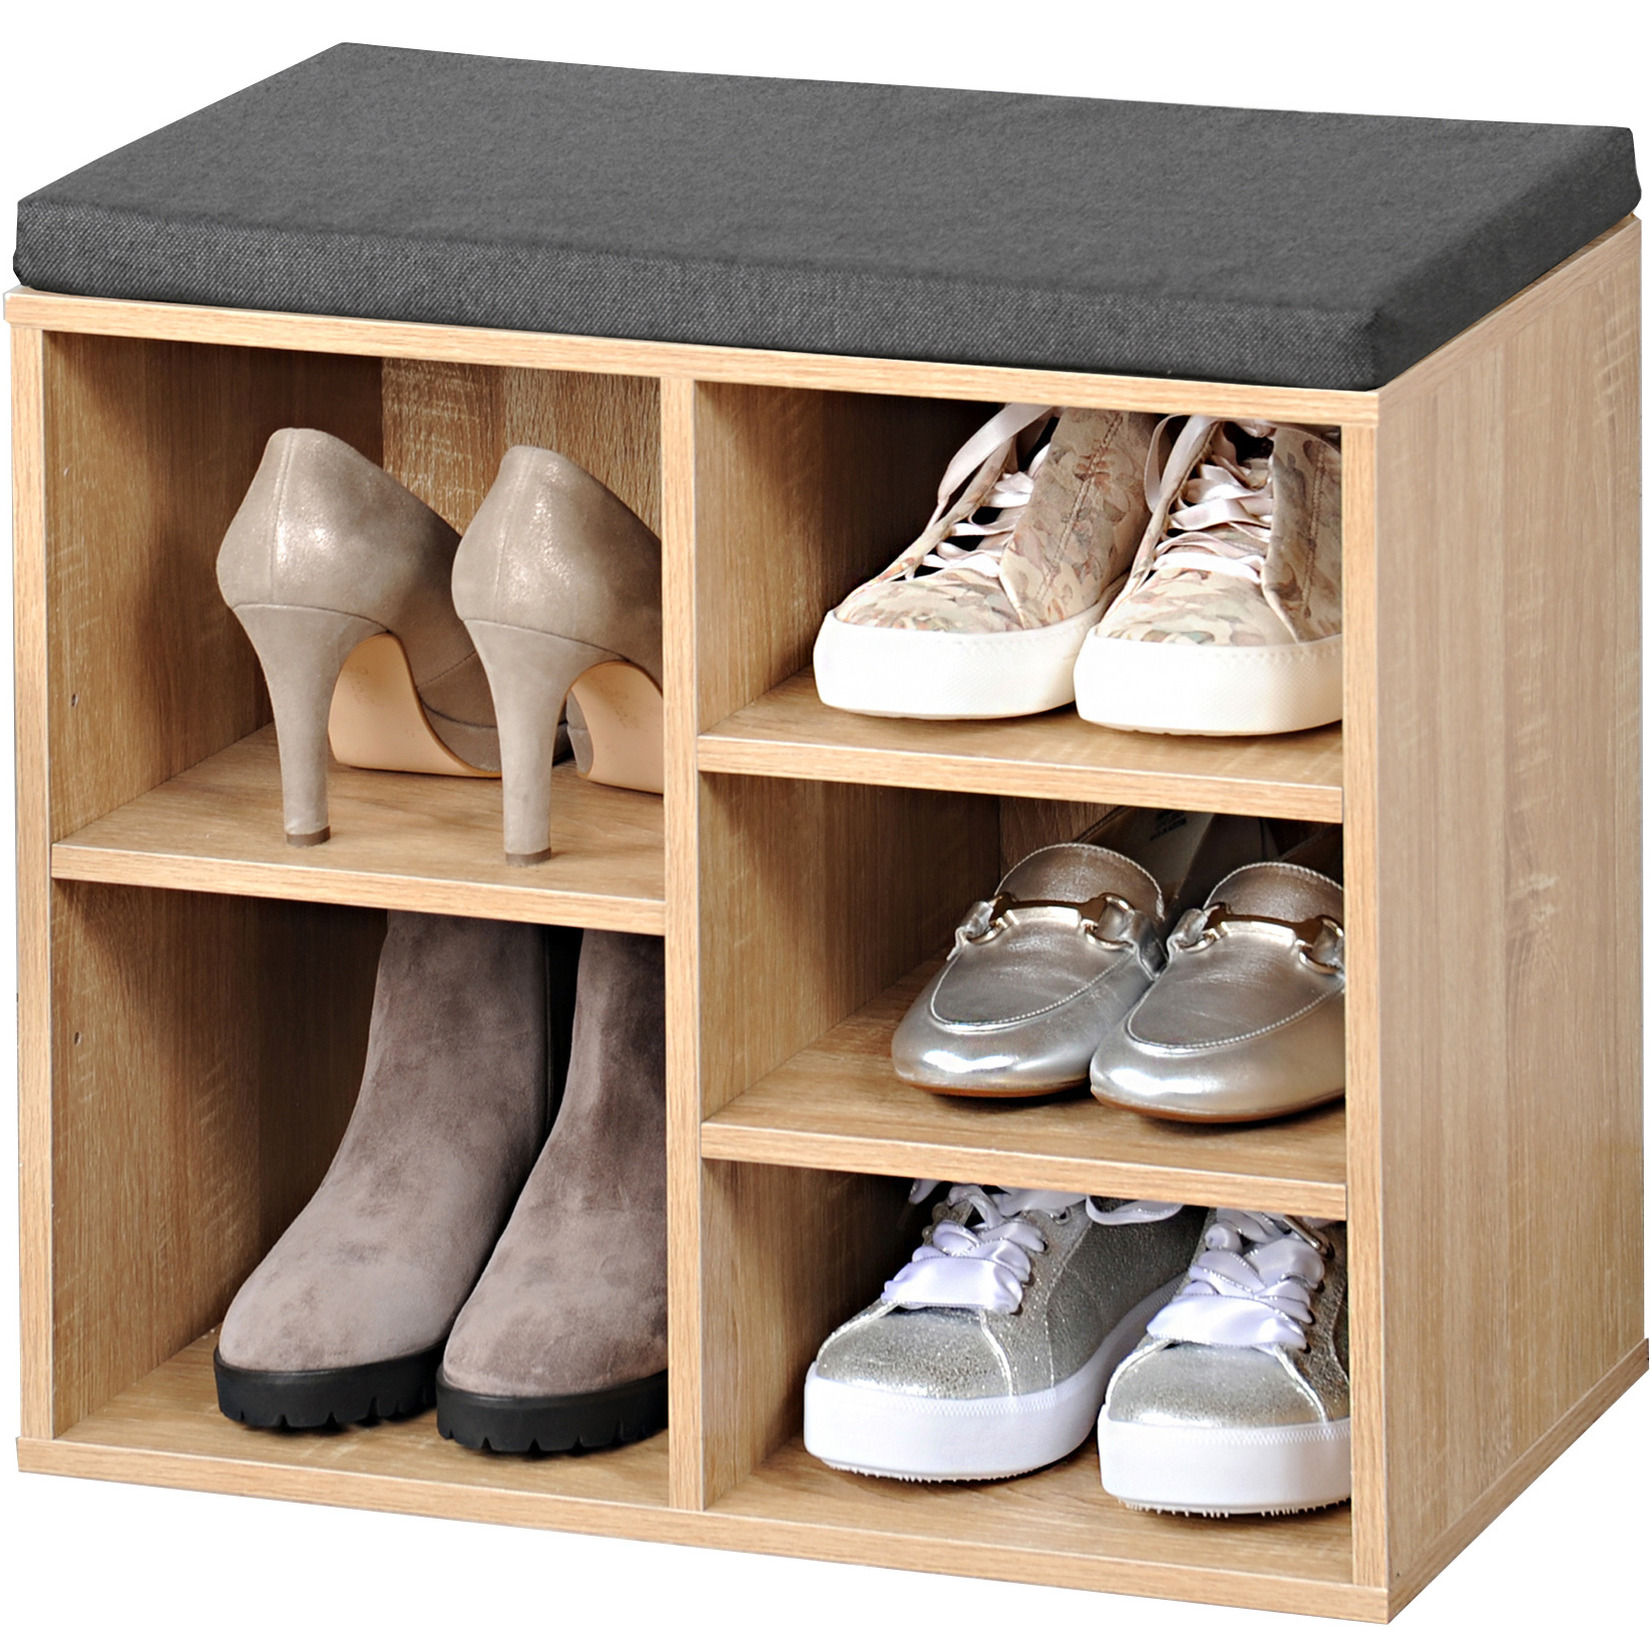 Bruine houtlook schoenenkast/schoenenrek bankje 29 x 48 x 51 cm met zitkussen